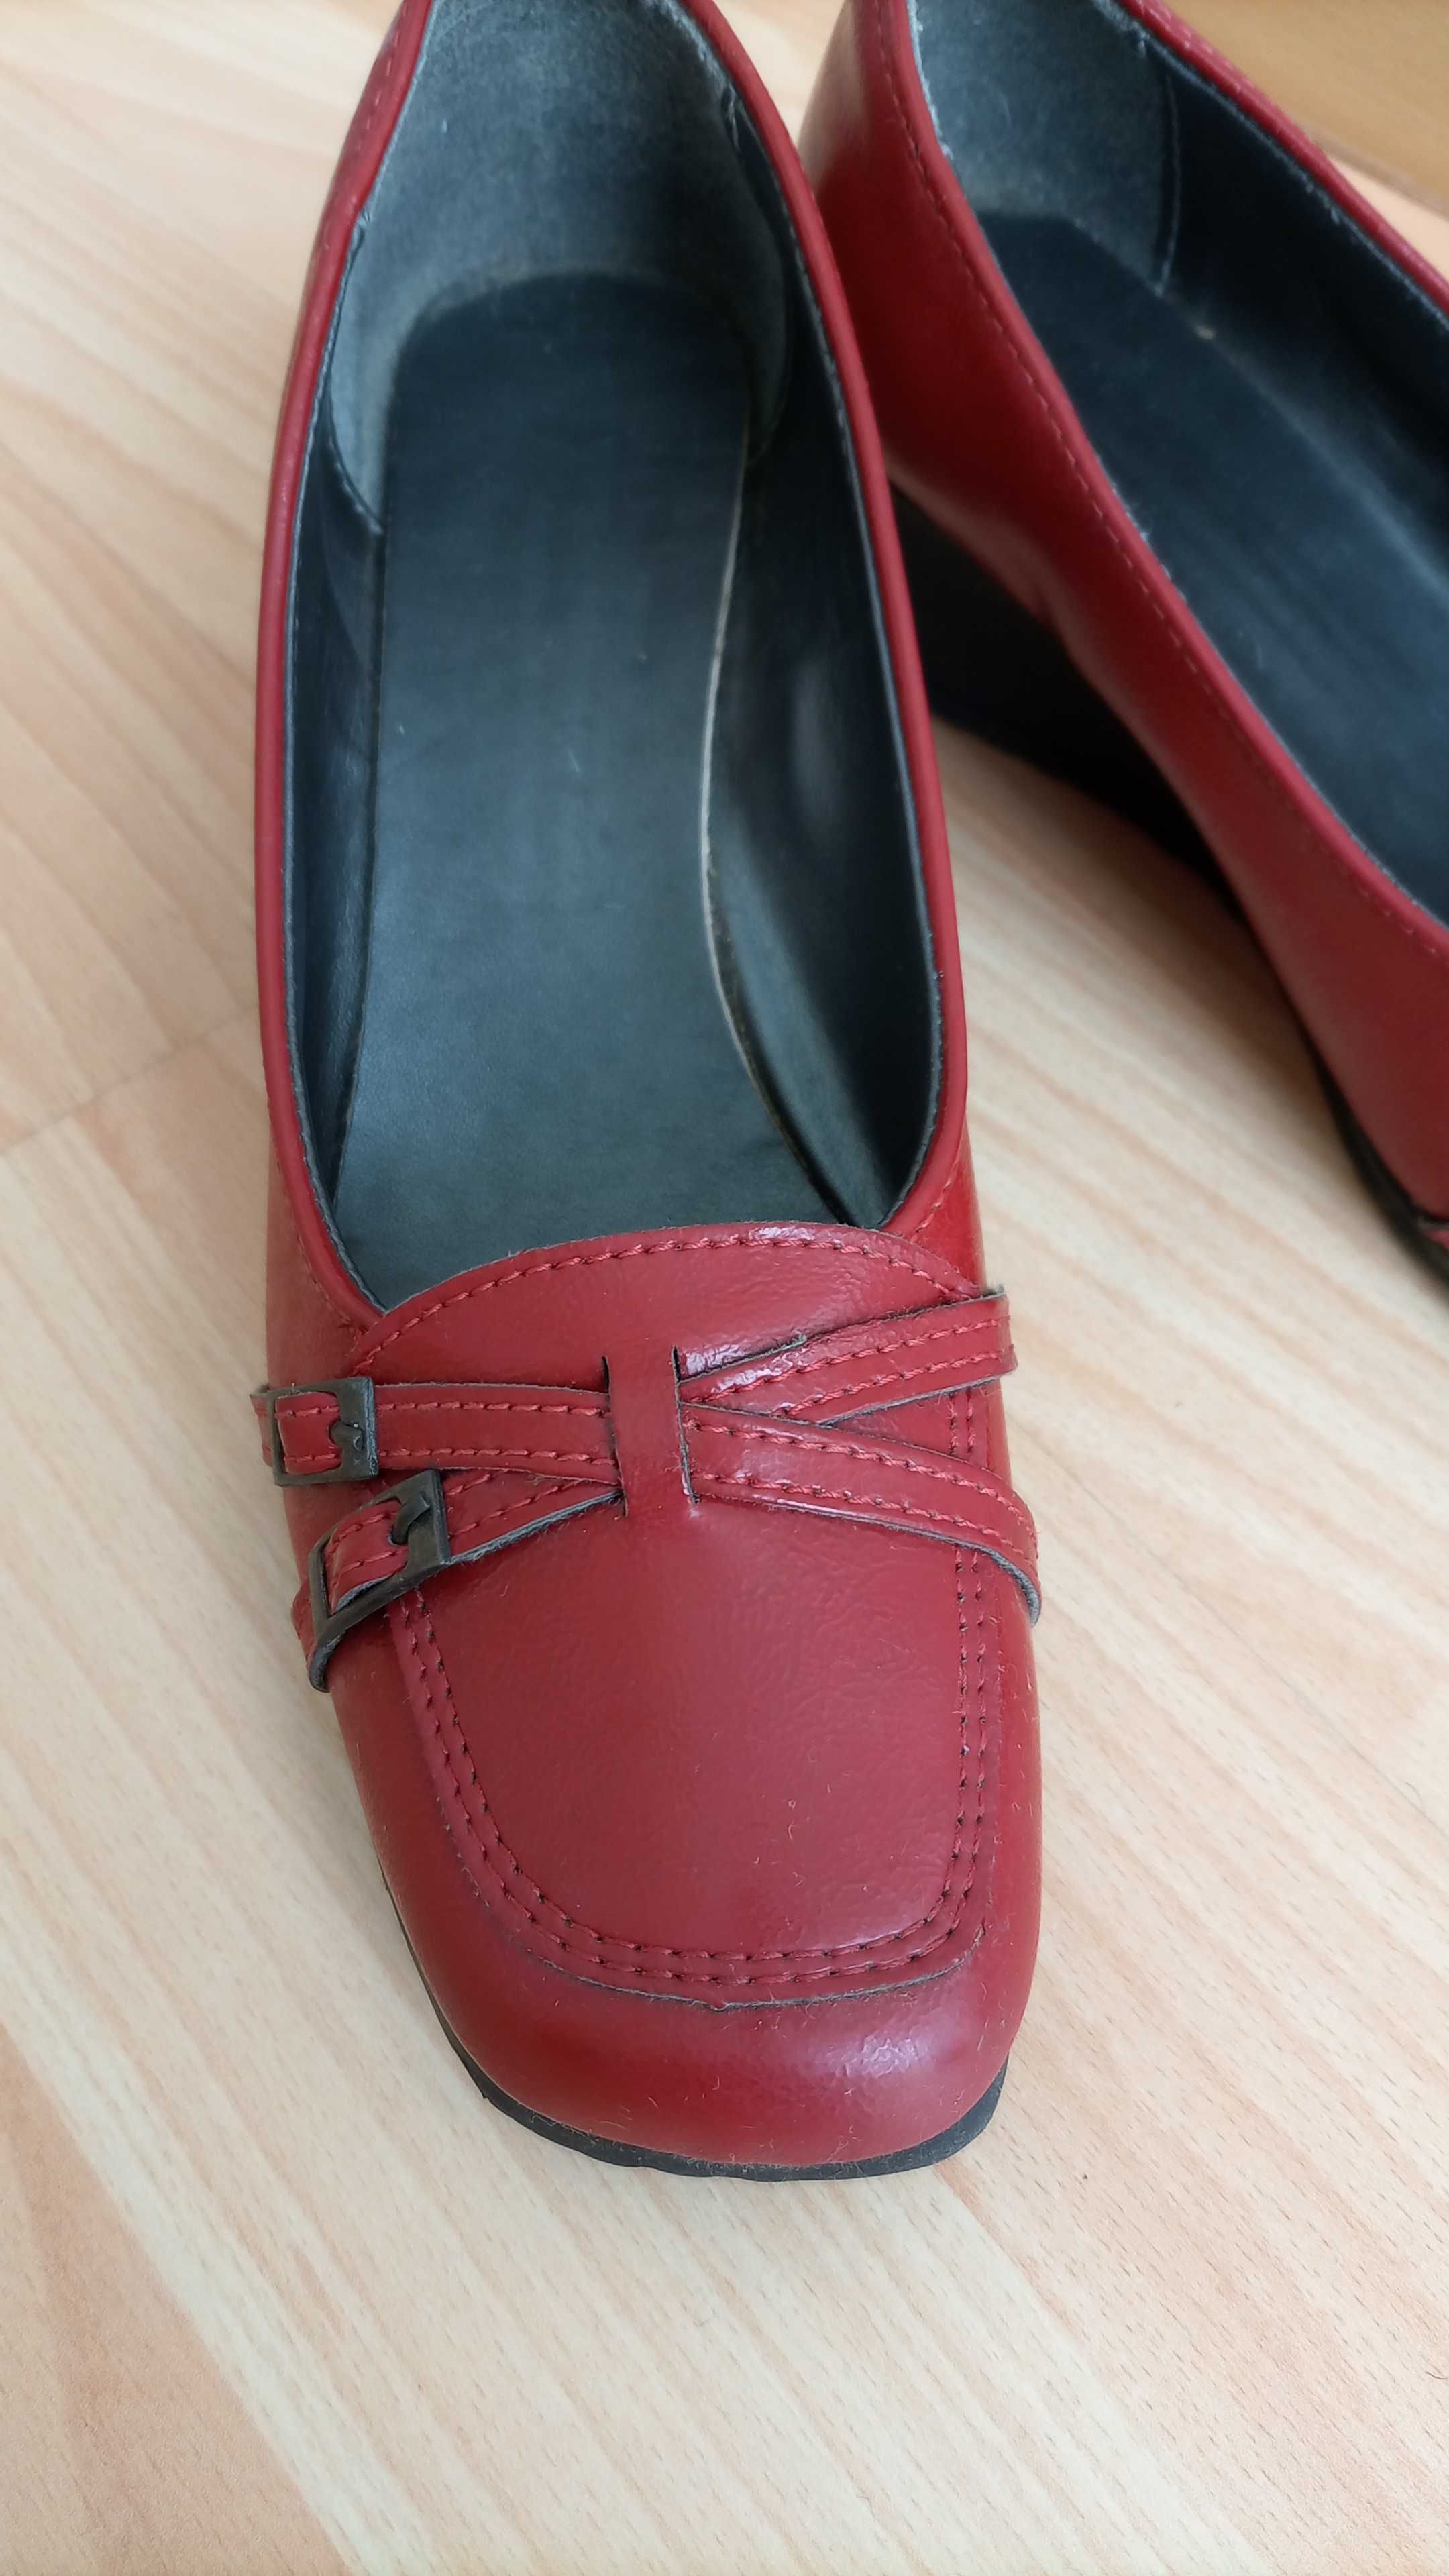 Sapatos Vermelhos salto cunha 4,5 cm - Tamanho 37